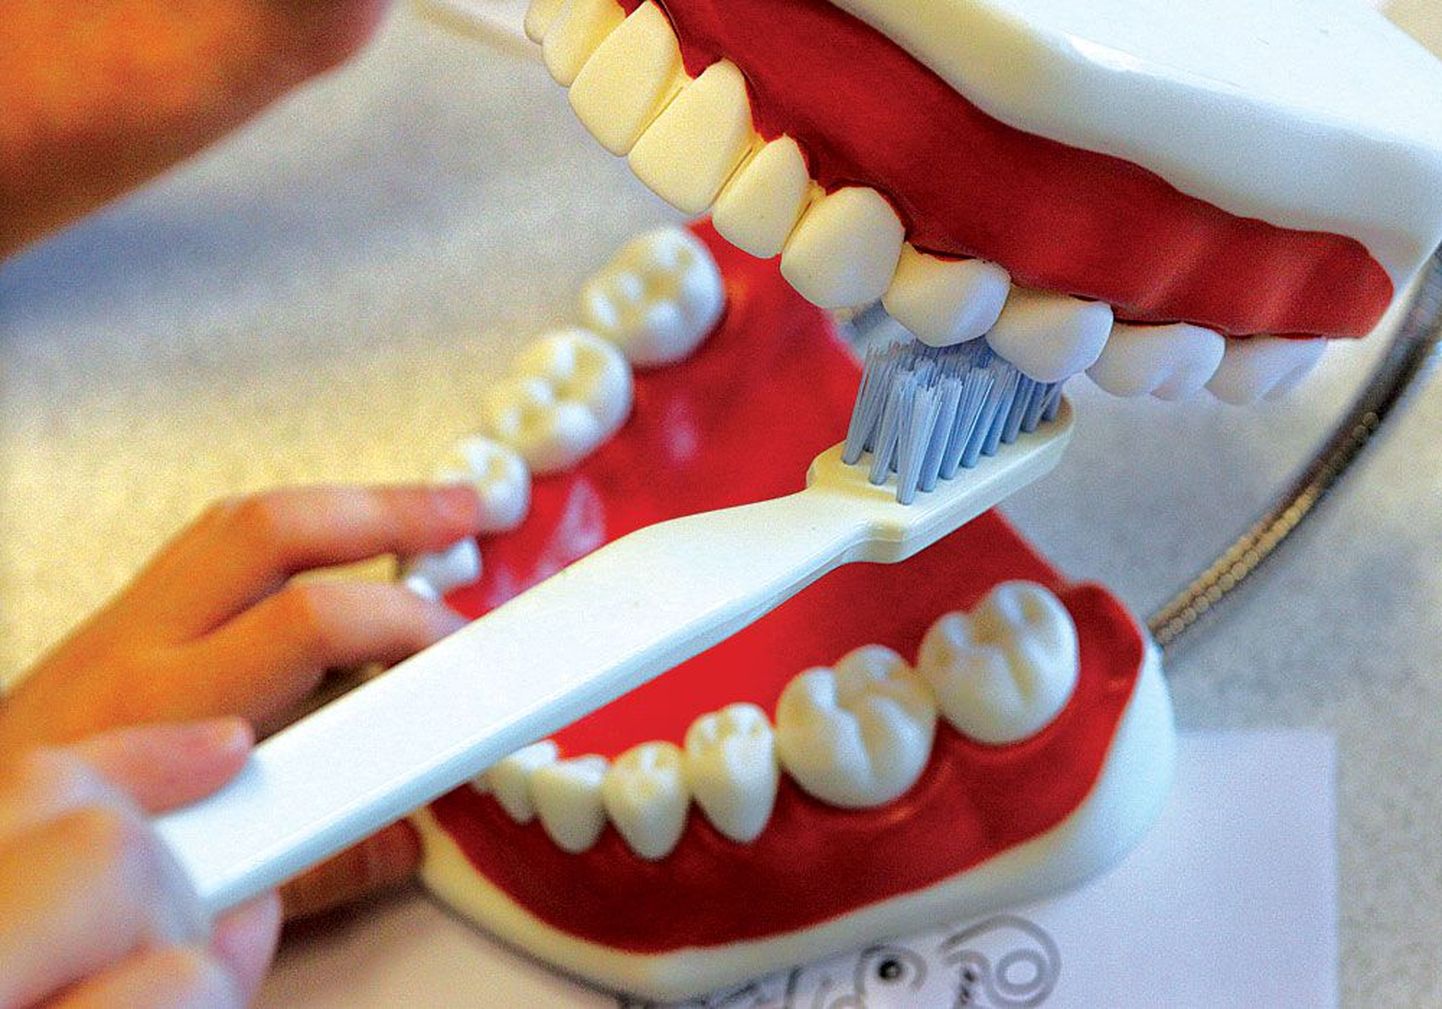 Hambaid tuleb õigesti harjata, siis ei ole karta hambakivi ega -auke.